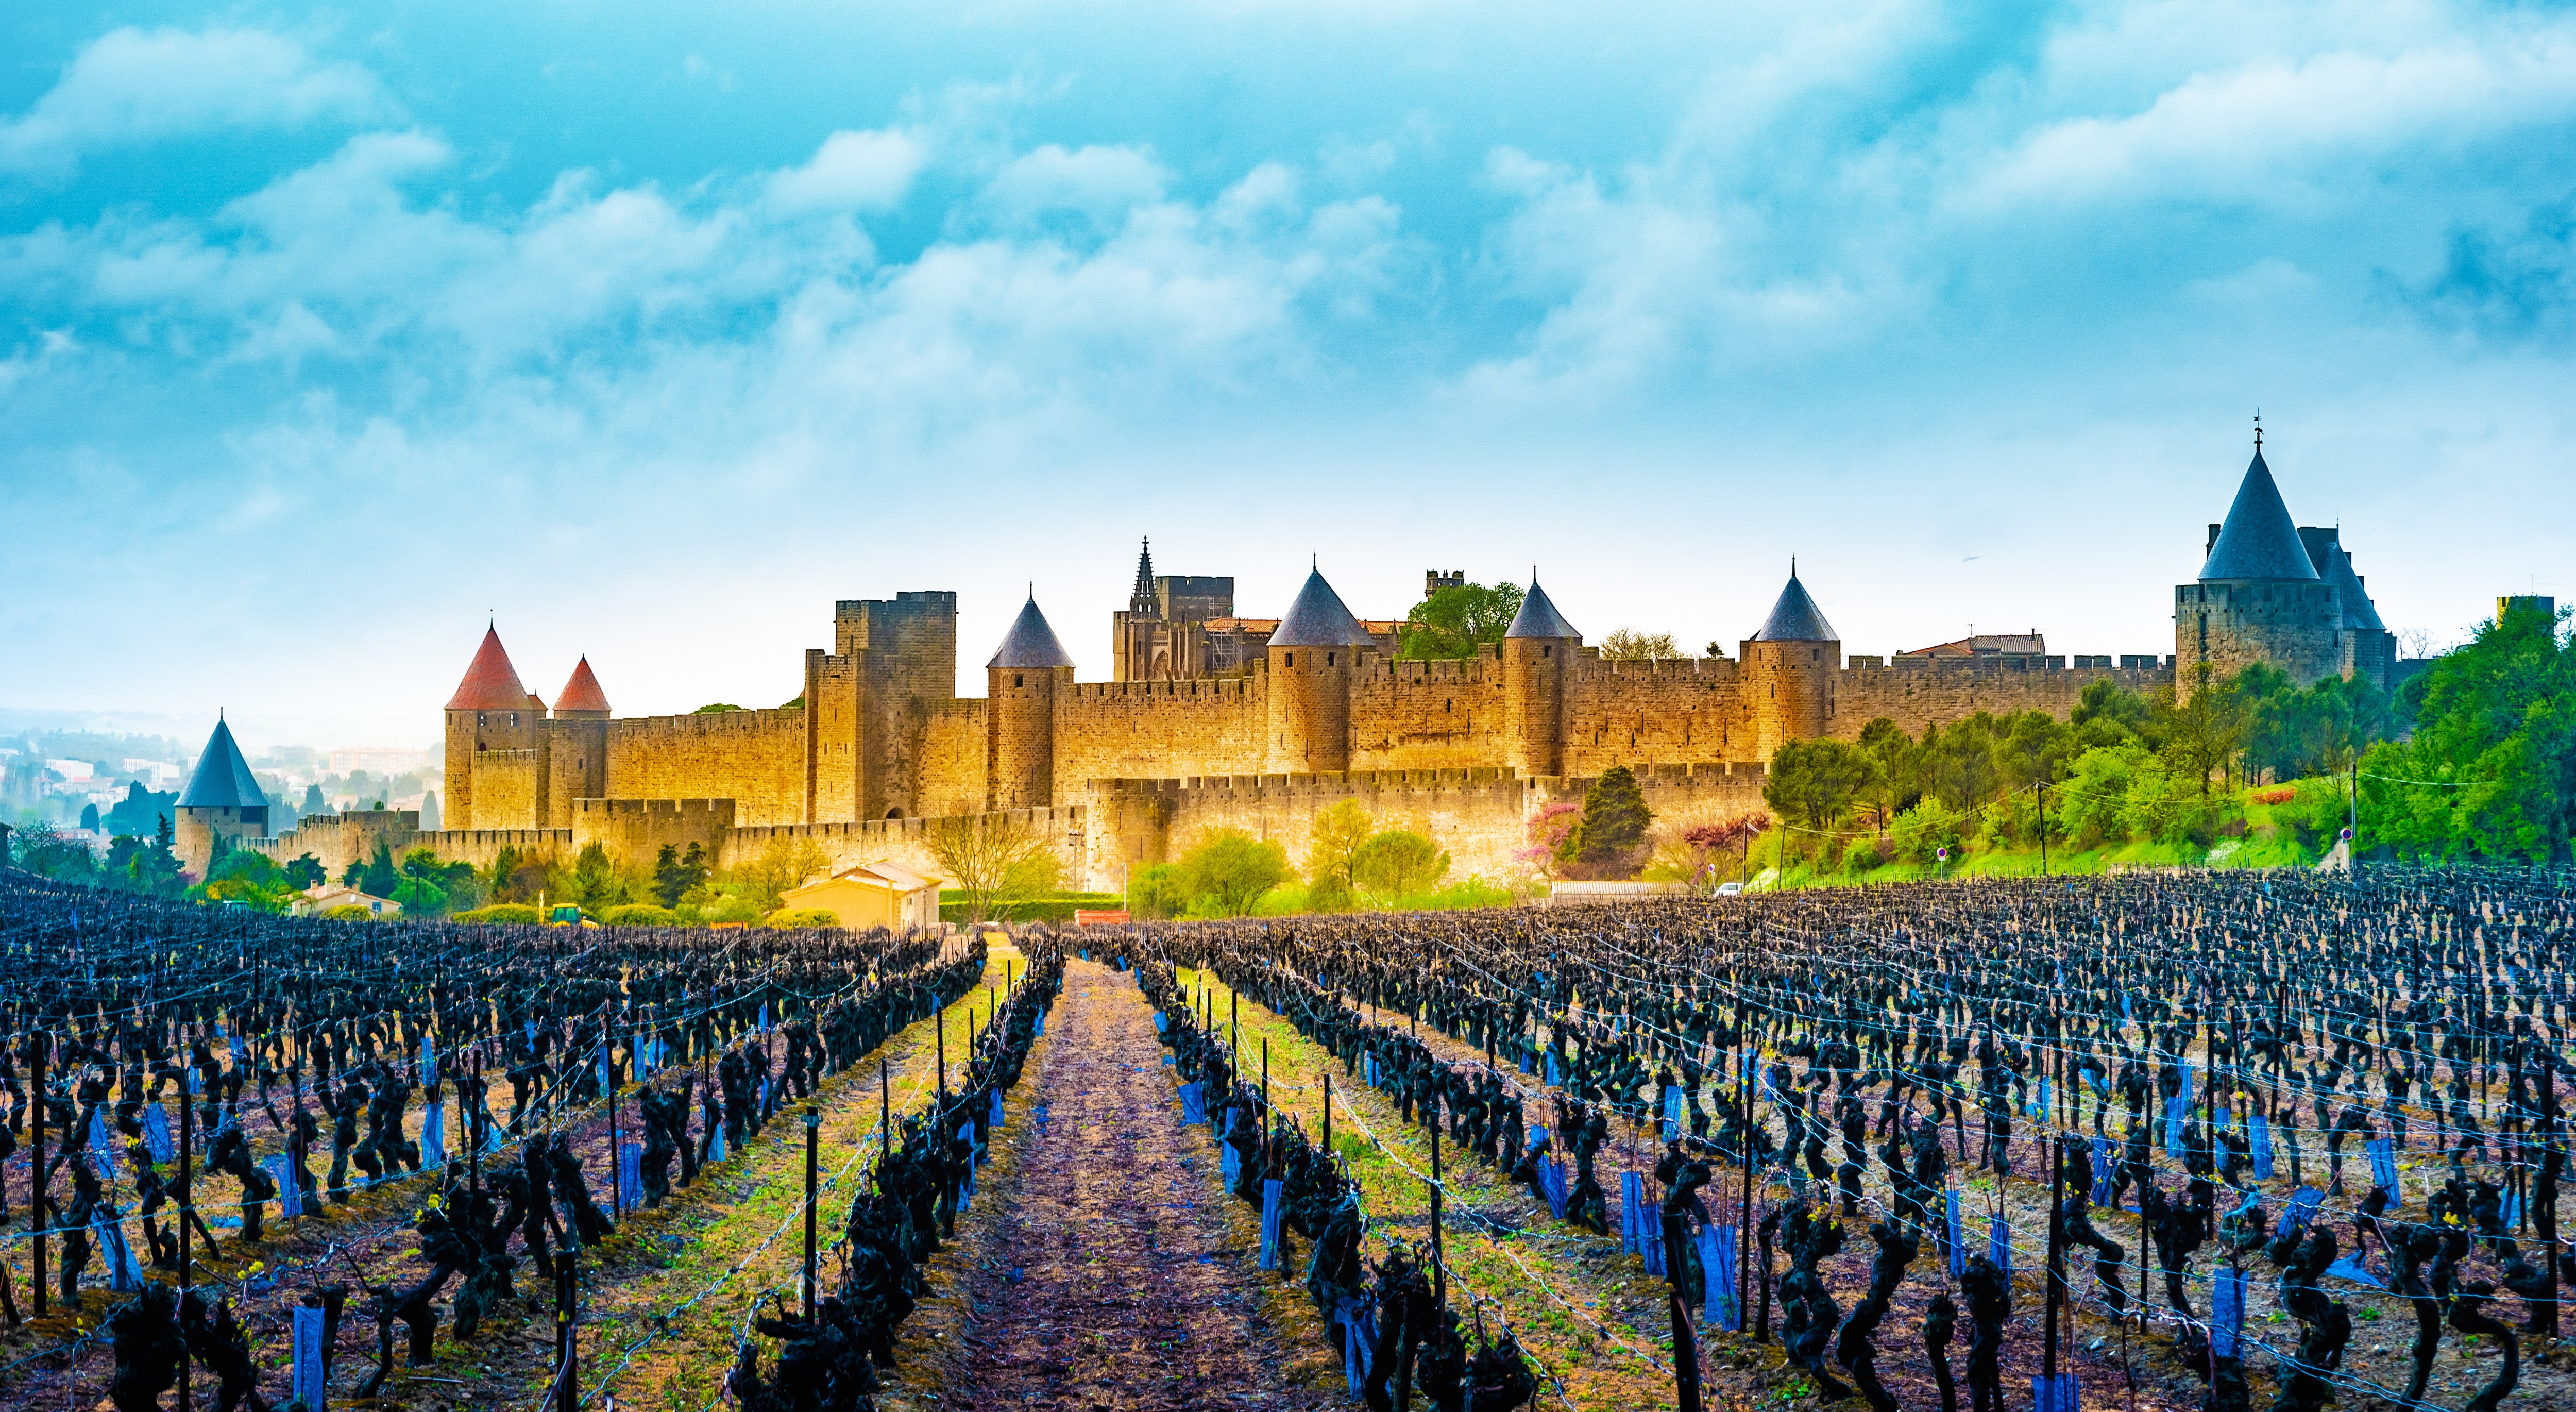 Visite de la Cité de Carcassonne et son Château, merveille d'Occitanie